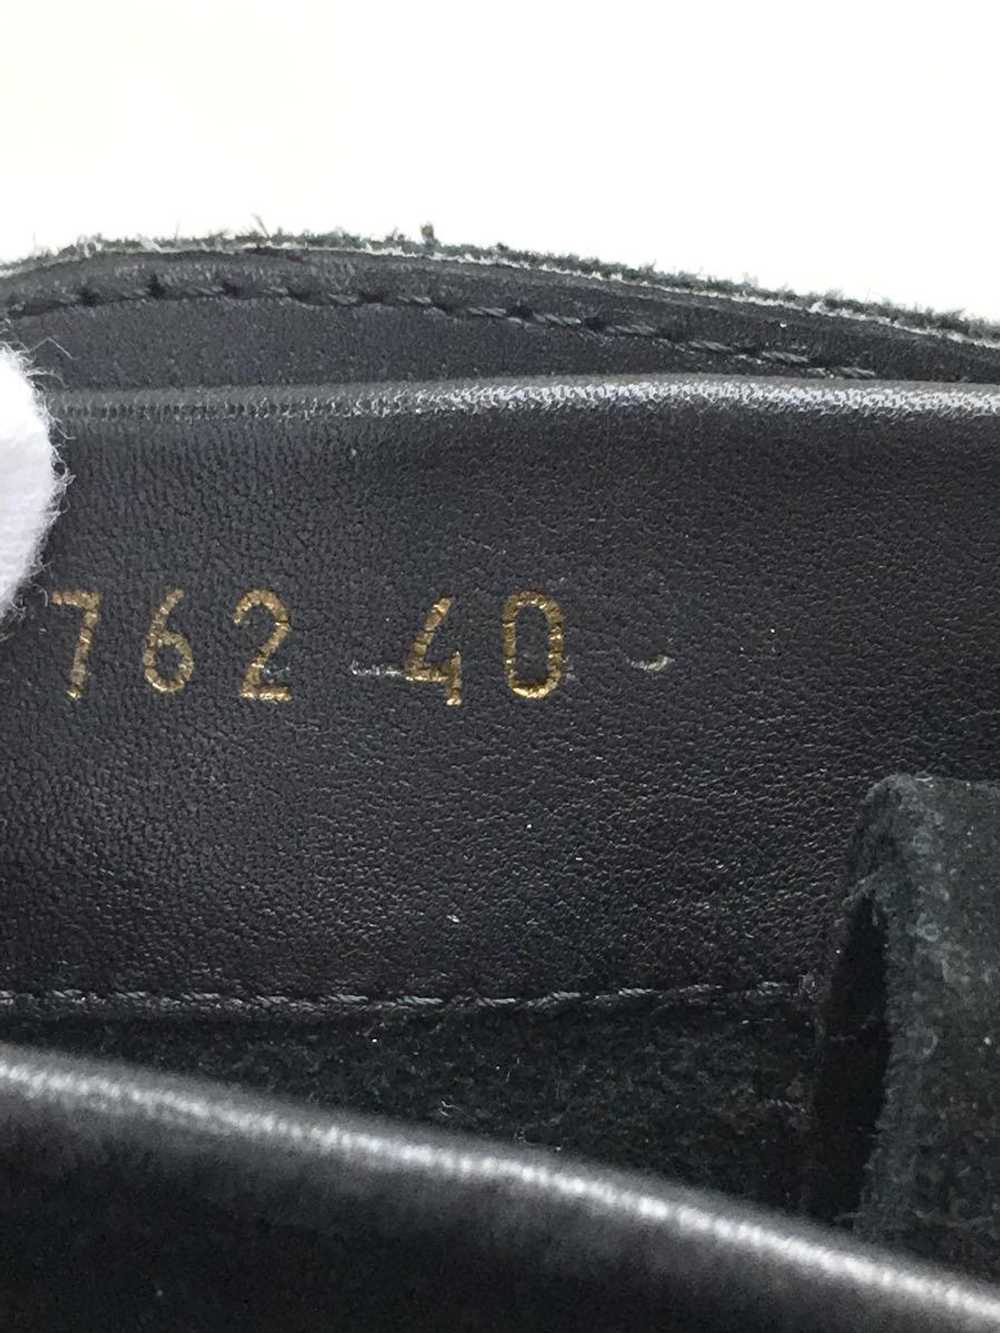 Yves Saint Laurent Boots/40/Blk/Suede Shoes BUR51 - image 5